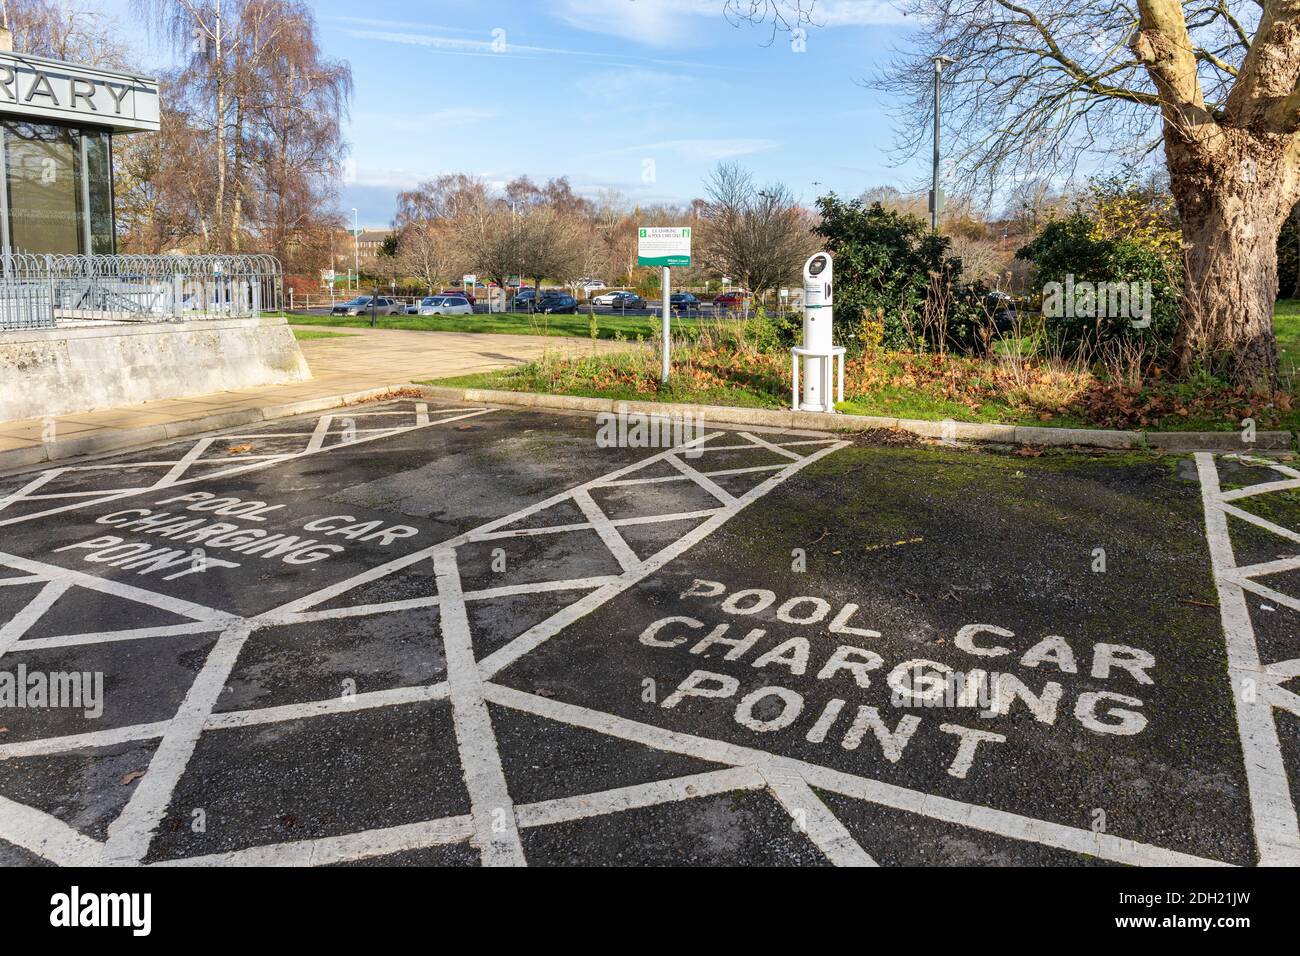 Wiltshire County Council pool car point de recharge des baies de stationnement. Réseau de charge BP Pulse EV, Trowbridge, Wiltshire, Angleterre, Royaume-Uni Banque D'Images